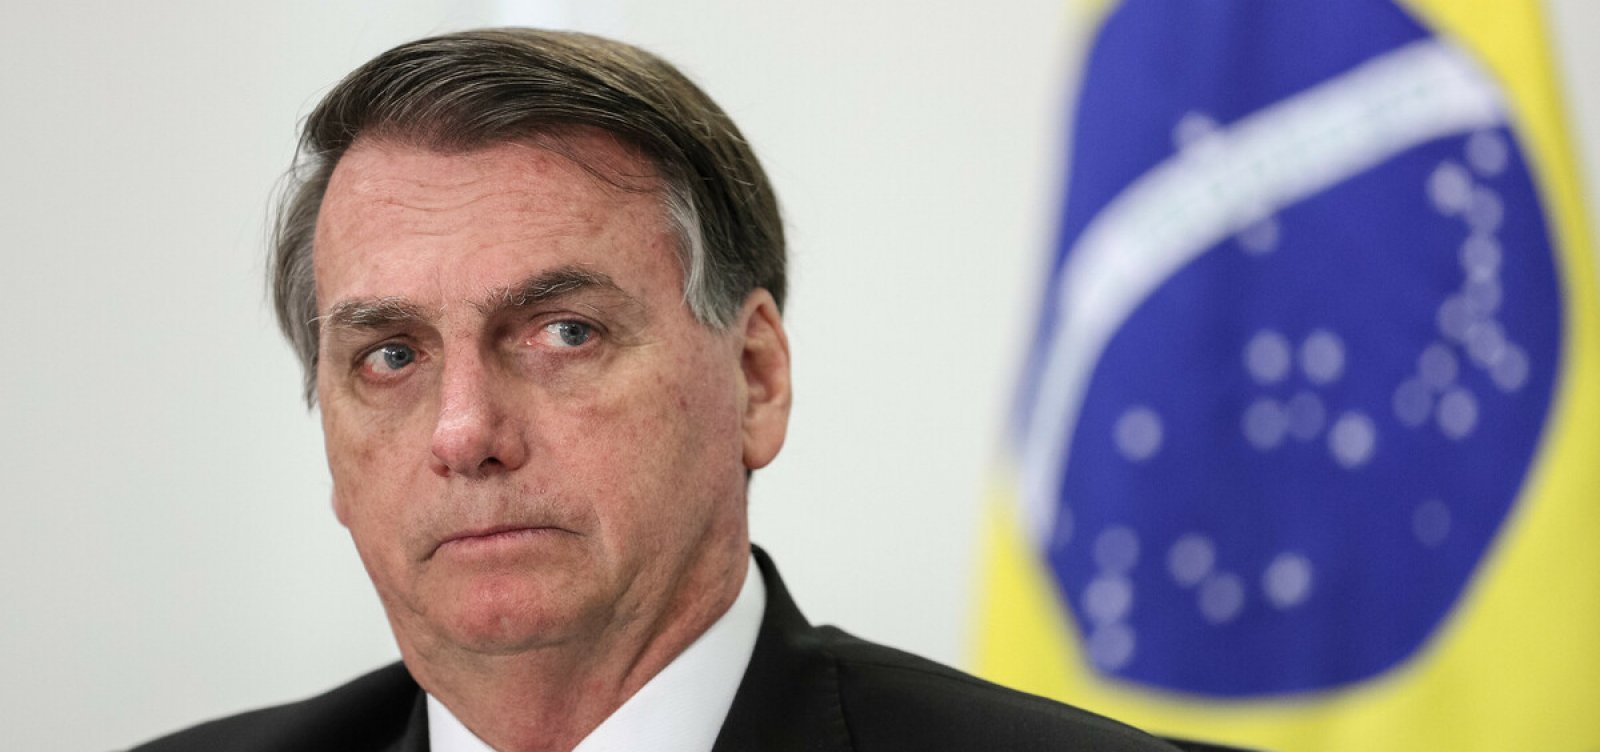 Caso das joias: Bolsonaro vai depor à Polícia Federal nesta quarta-feira